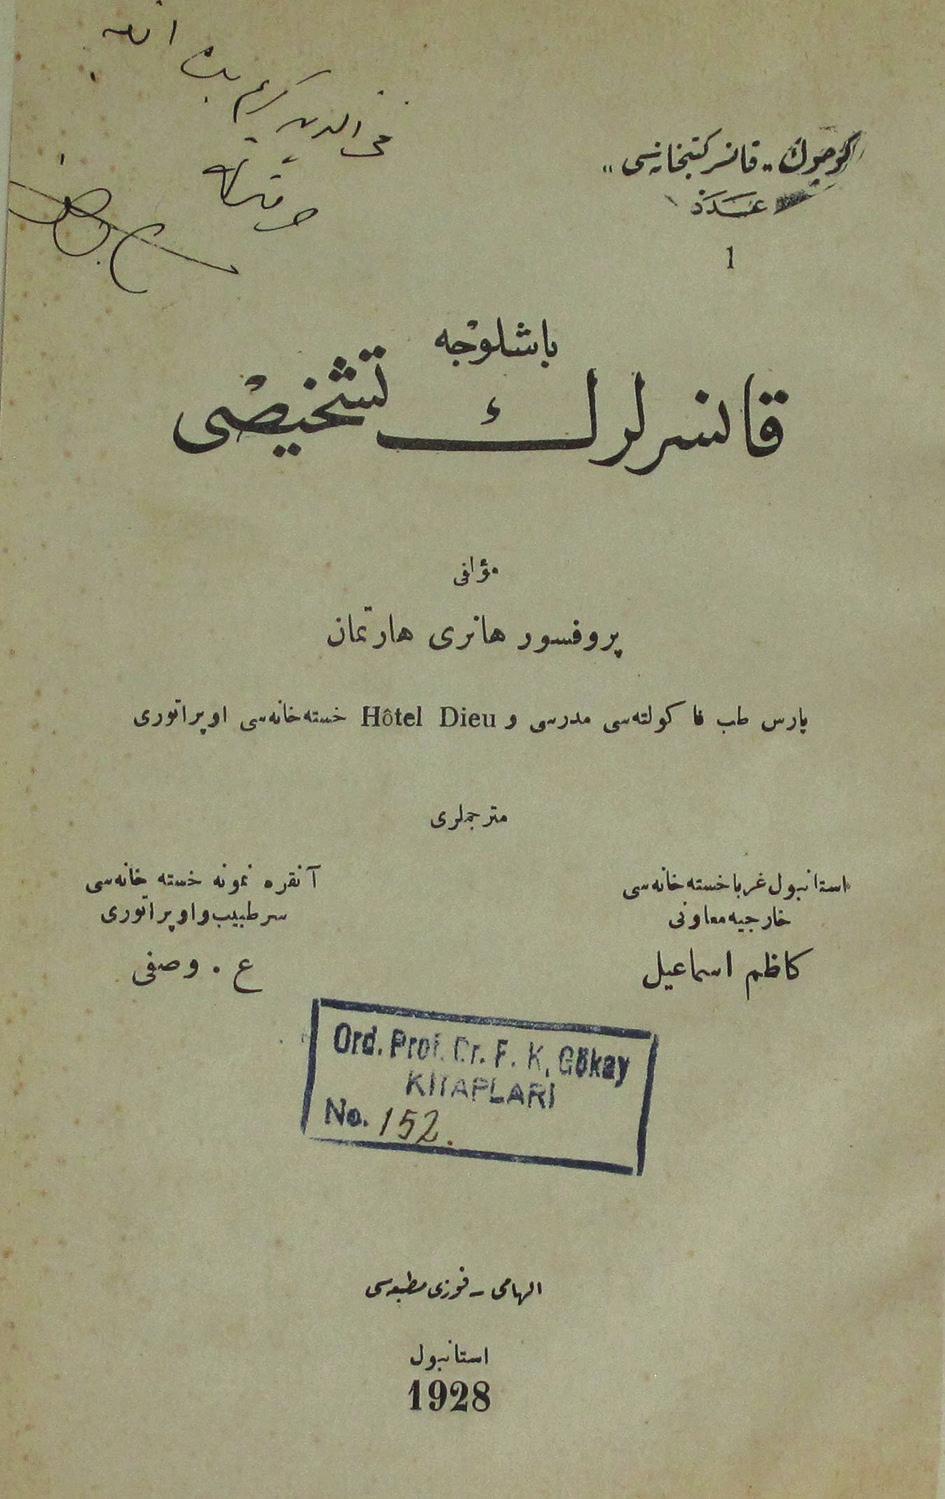 Resim 2. Kazım İsmail ve Ömer Vasfi Aybar-çeviri kitap olarak basılmıştır. Ayrıca aynı tarihlerde bu çeviri kitapların dışında Türk hekimlerin makaleleri çeşitli dergilerde yayınlanmaktaydı.